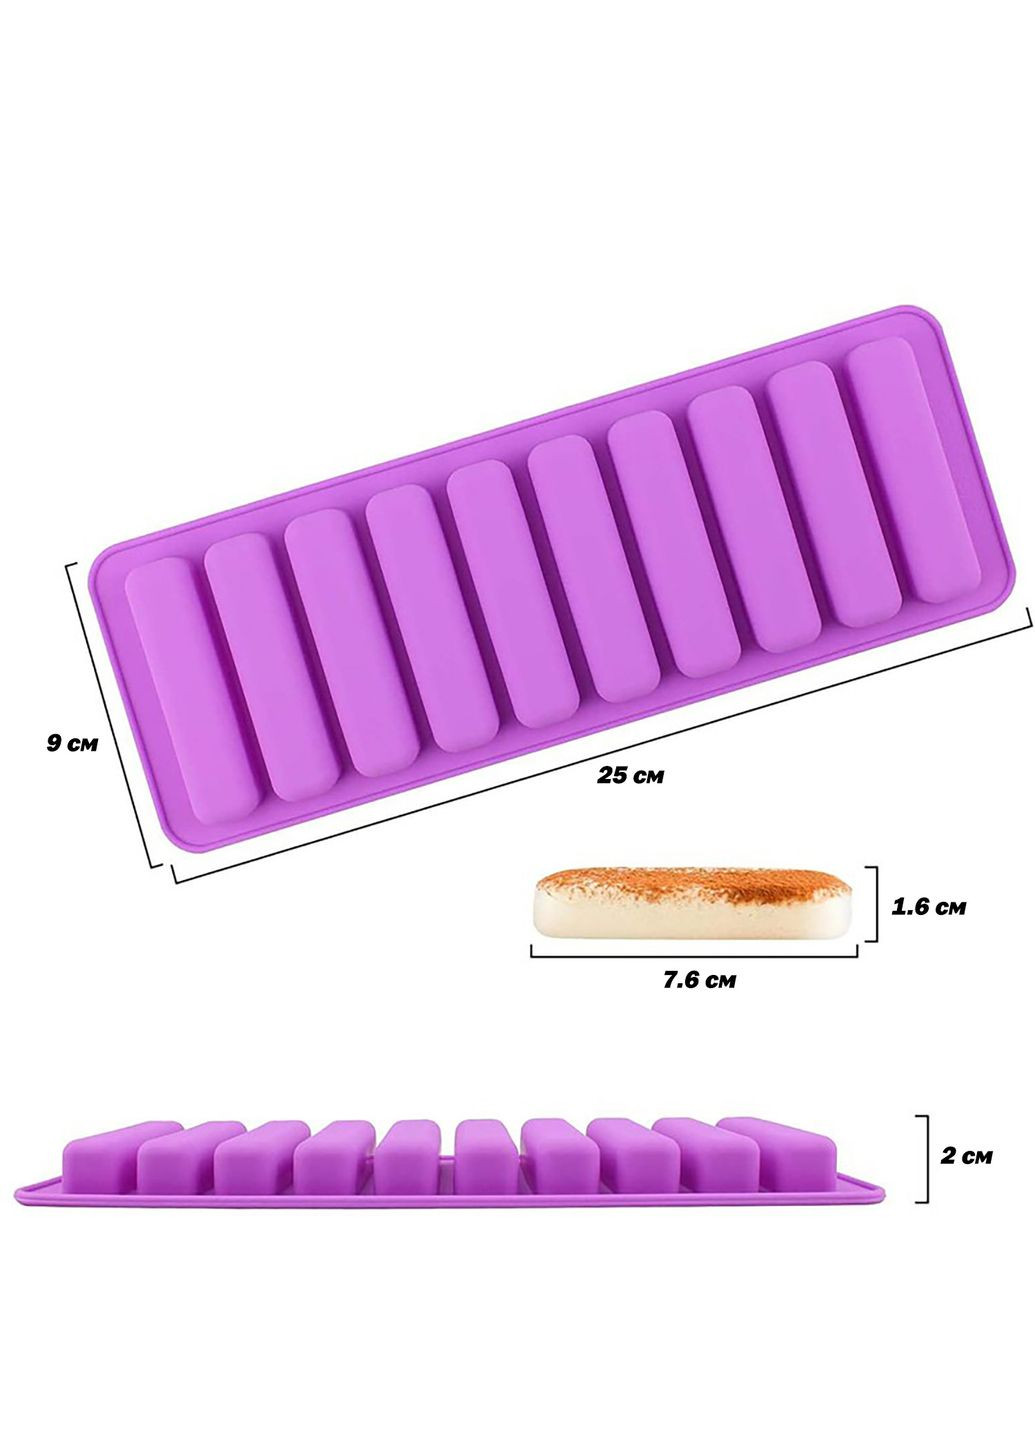 Форма силиконовая для льда и выпечки печенья Хомка, Дамские Пальчики, батончиков, бисквитов, палочек Савоярди A-Plus (282596075)